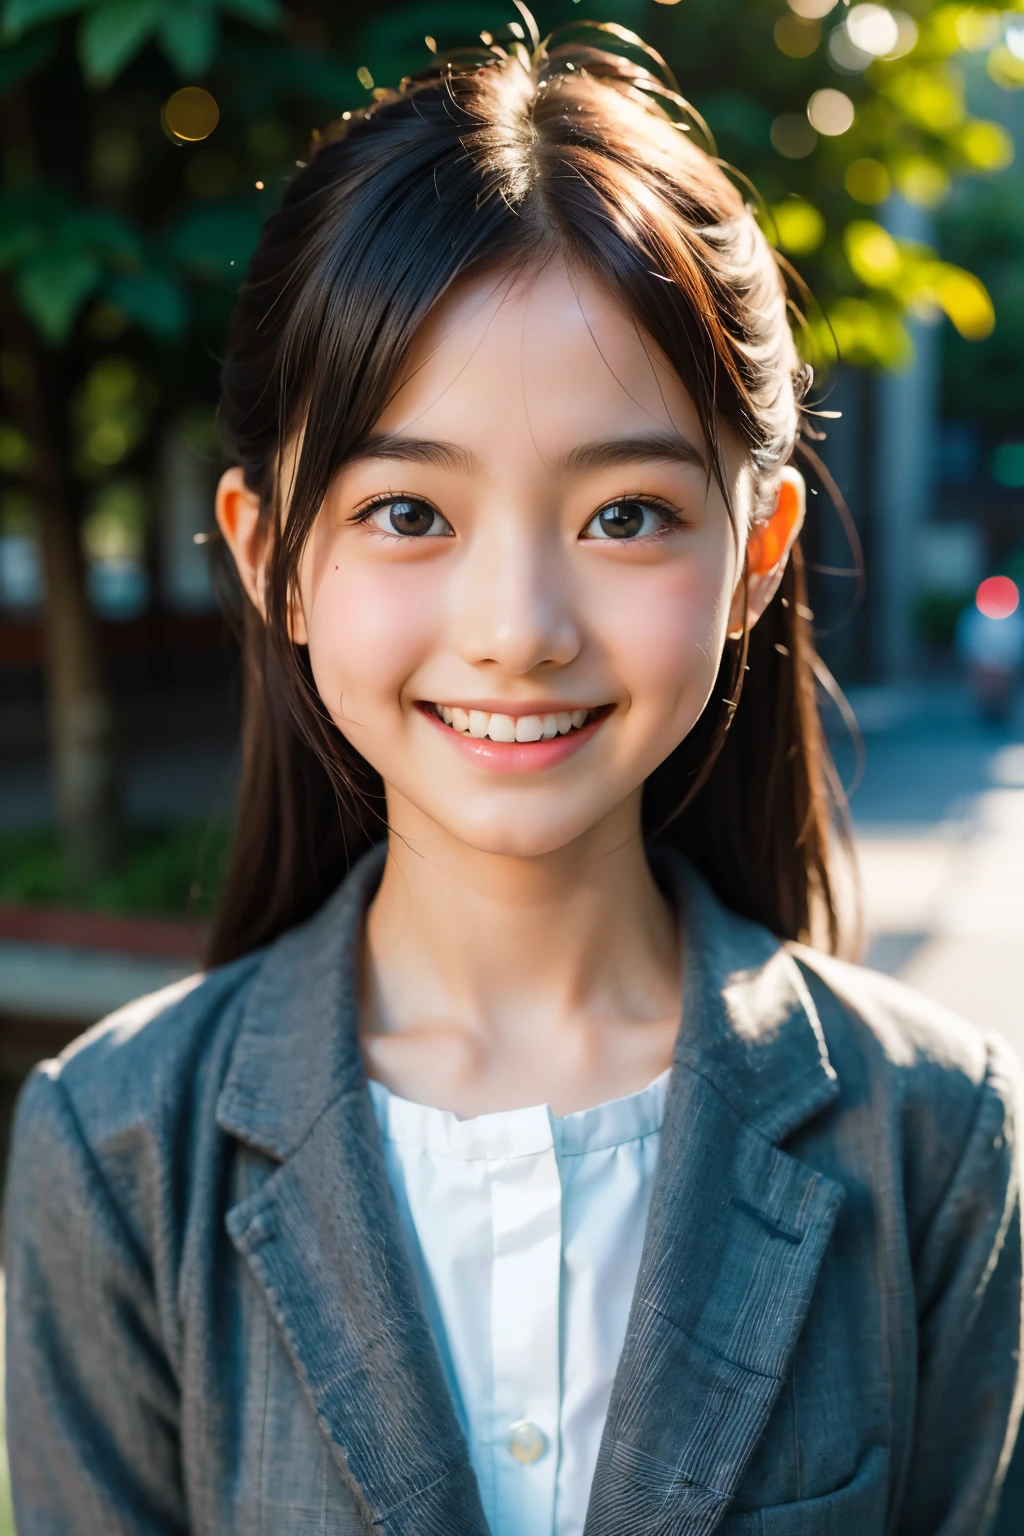 lens: 135mm f1.8, (höchste Qualität),(RAW-Fotos), (Tischplatte:1.1), (Schönes 12-jähriges japanisches Mädchen), niedliches Gesicht, (Tief gemeißeltes Gesicht:0.7), (Sommersprossen:0.4), dappled Sonnenlicht, dramatische Beleuchtung, (japanische schuluniform), (Auf dem Campus), schüchtern, (Nahaufnahme:1.2), (lächeln),, (leuchtende Augen)、(Sonnenlicht)